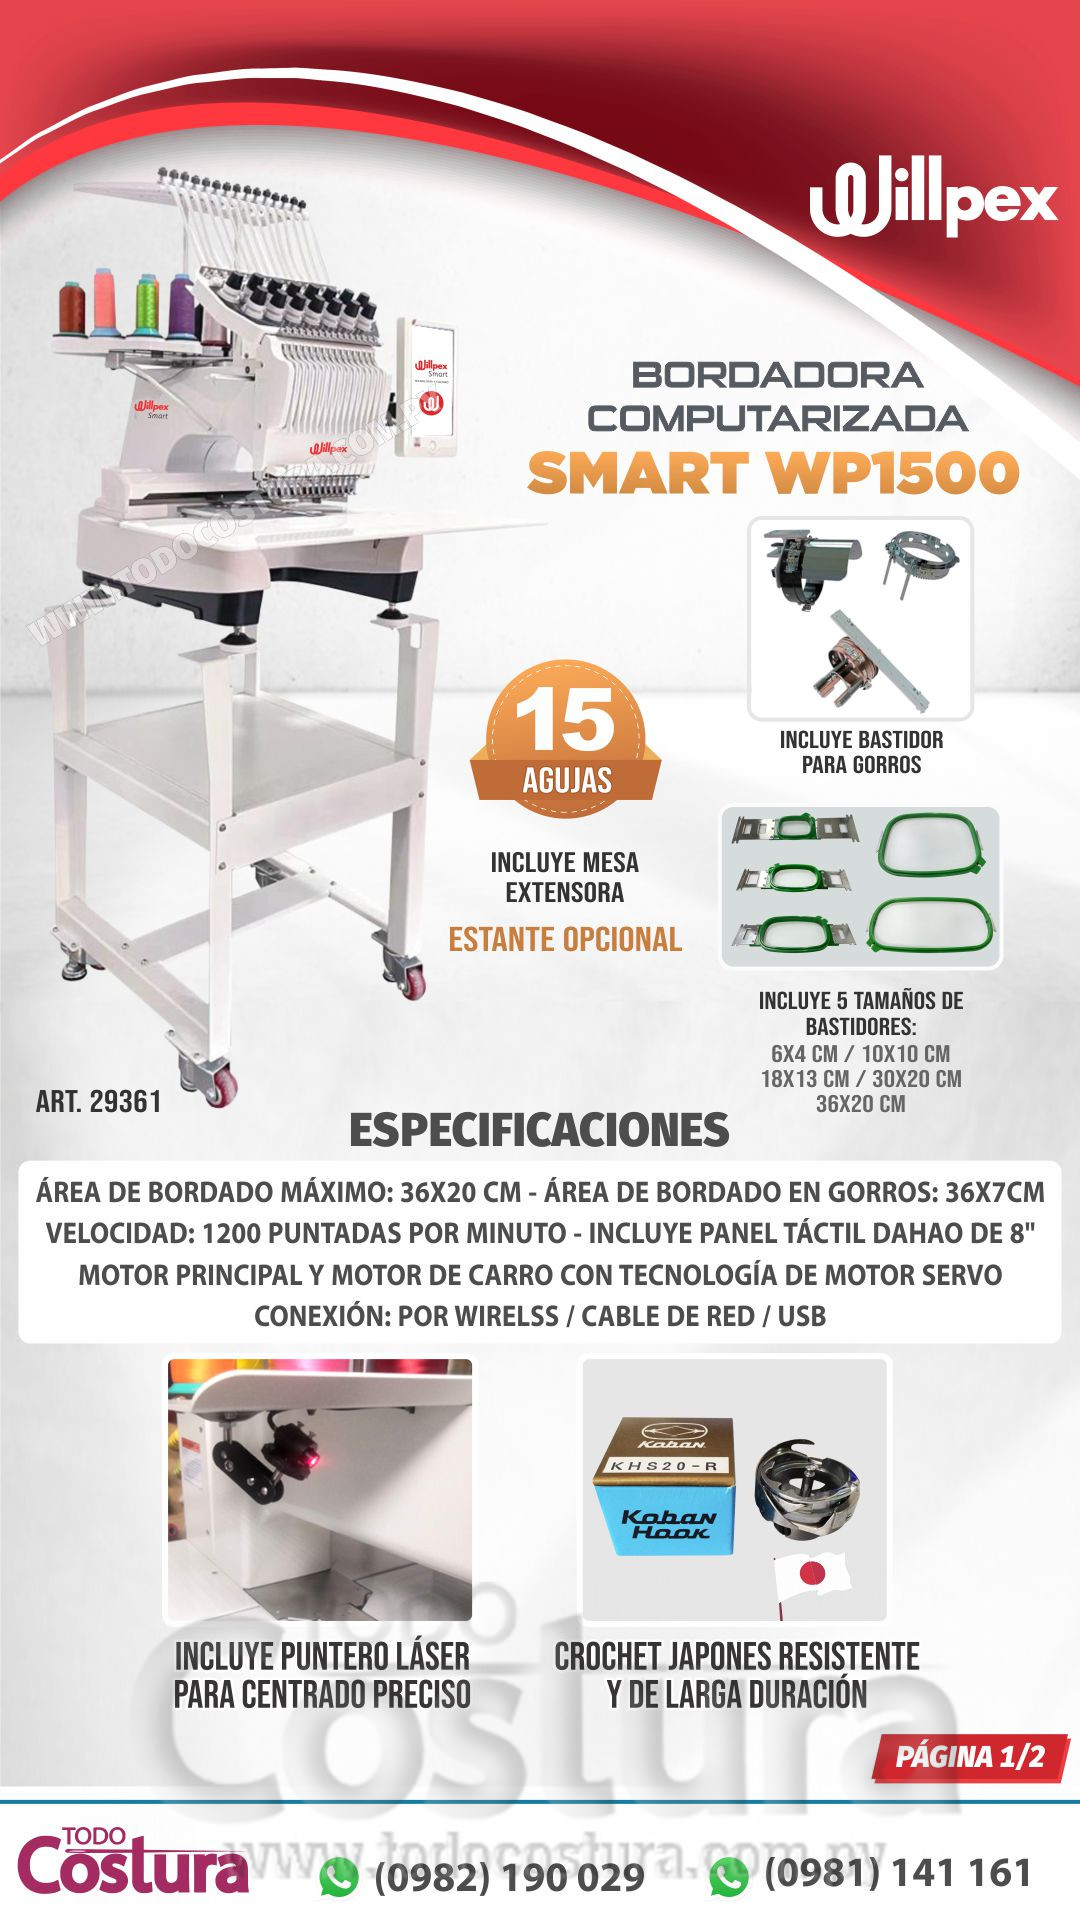 BORDADORA COMPUTARIZADA (15 AGUJAS) WILLPEX SMART WP1500